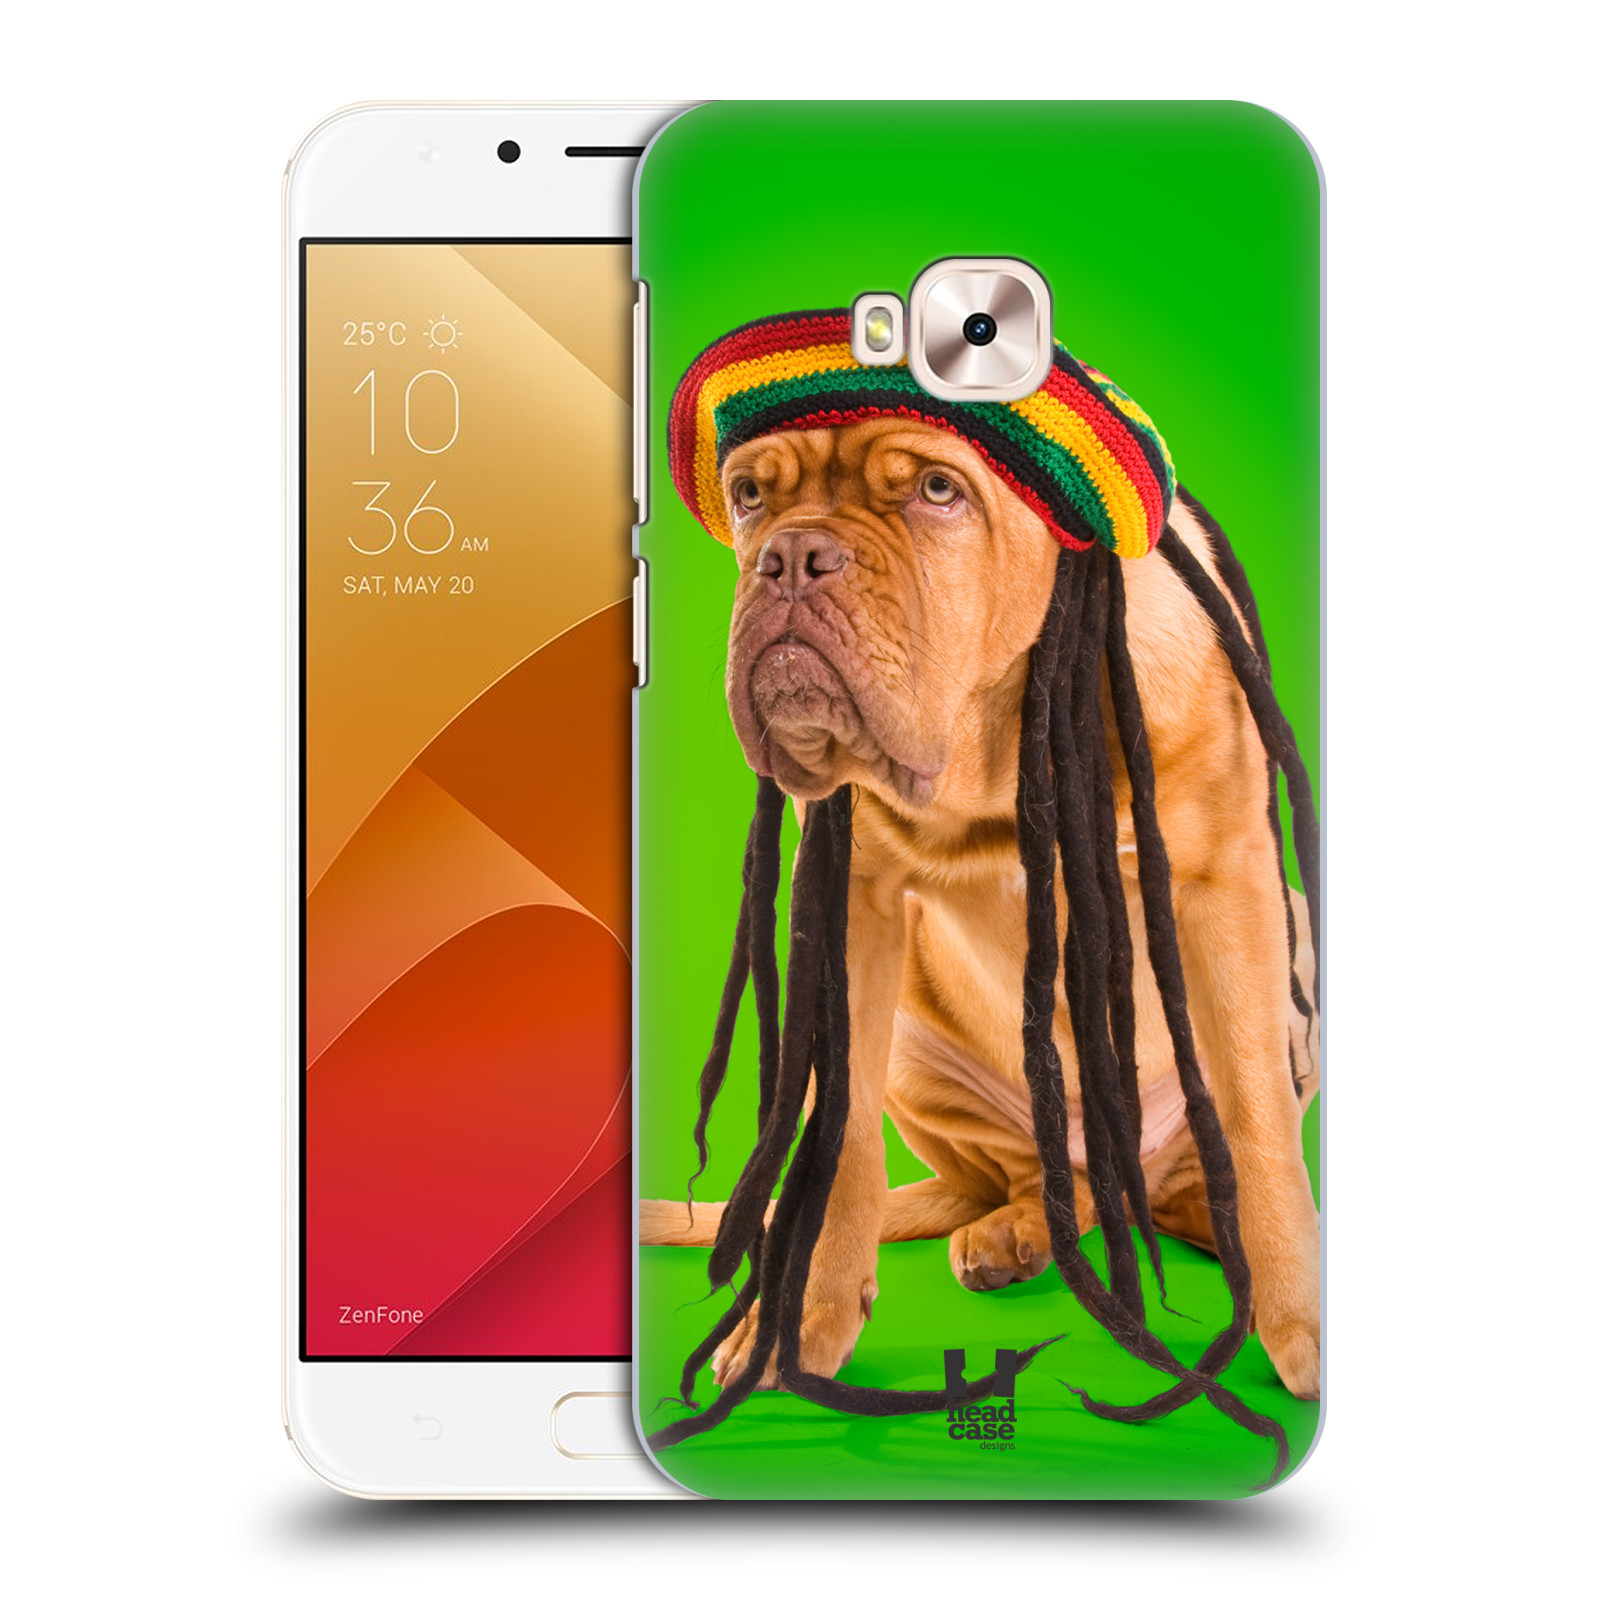 HEAD CASE plastový obal na mobil Asus Zenfone 4 Selfie Pro ZD552KL vzor Legrační zvířátka pejsek dredy Rastafarián